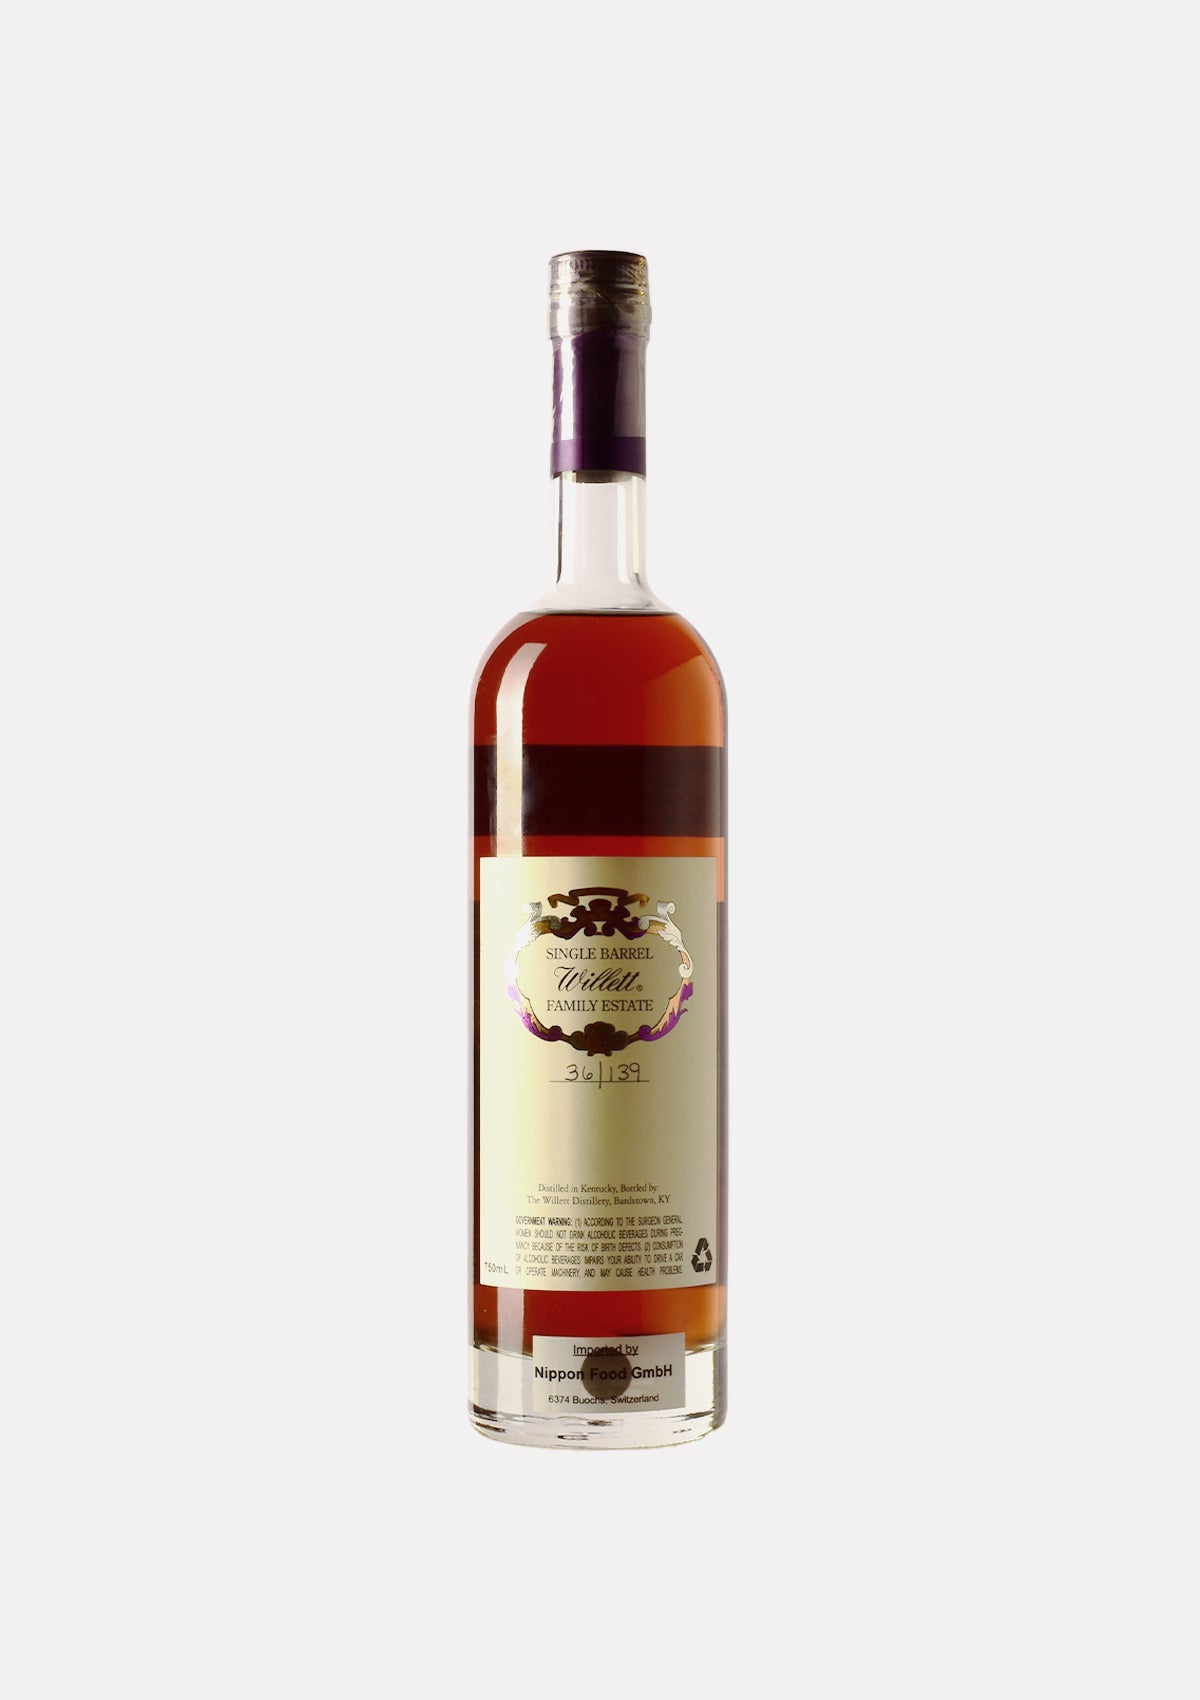 Willett Straight Kentucky Bourbon Whiskey 13 Jahre